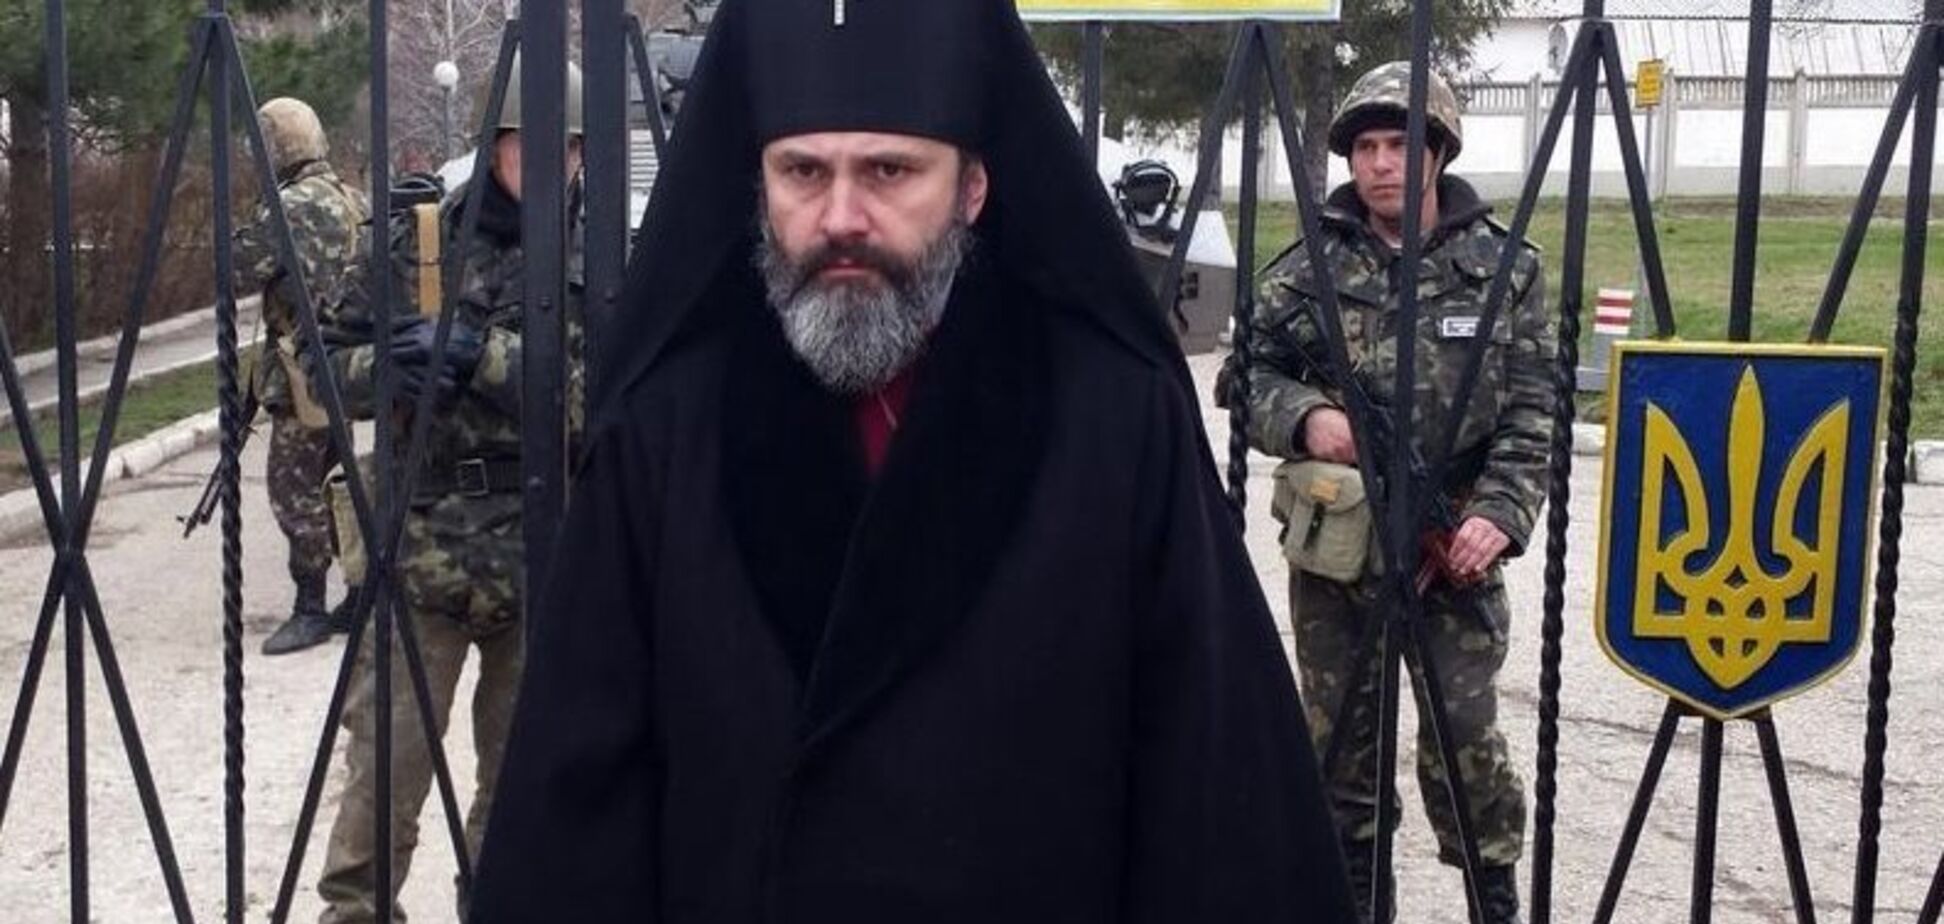 Архиепископ ПЦУ вышел на связь и рассказал, что ему 'шьют' в Крыму